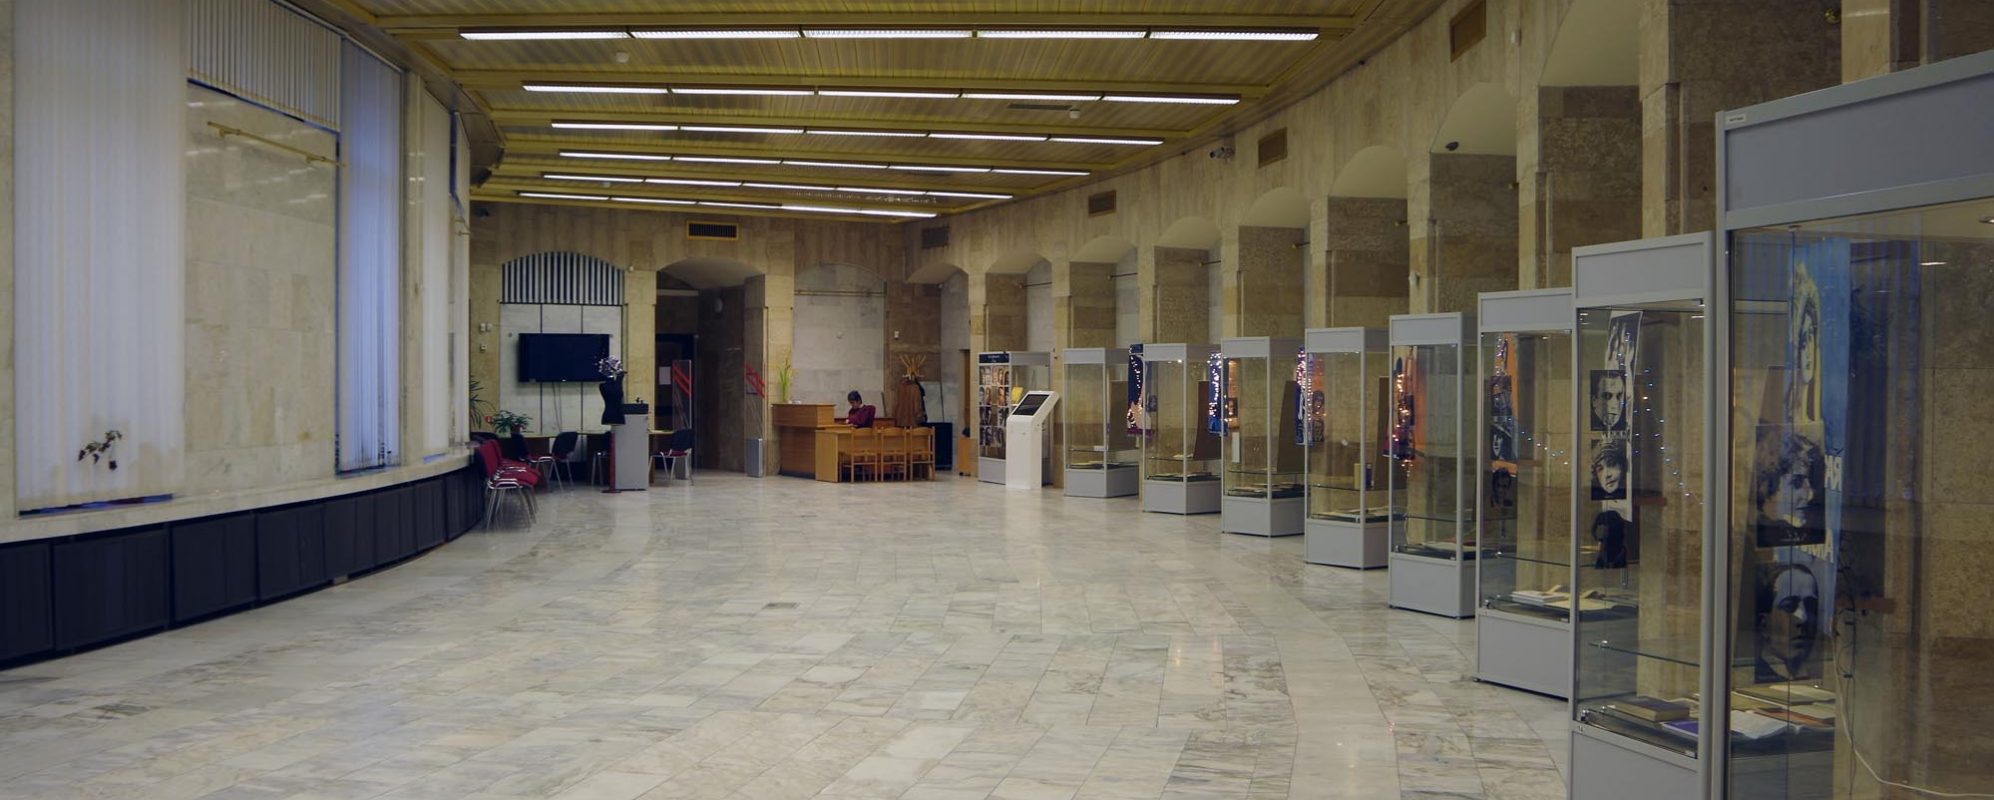 Фотографии выставочного зала Центральный выставочный зал Нового здания Российской национальной библиотеки